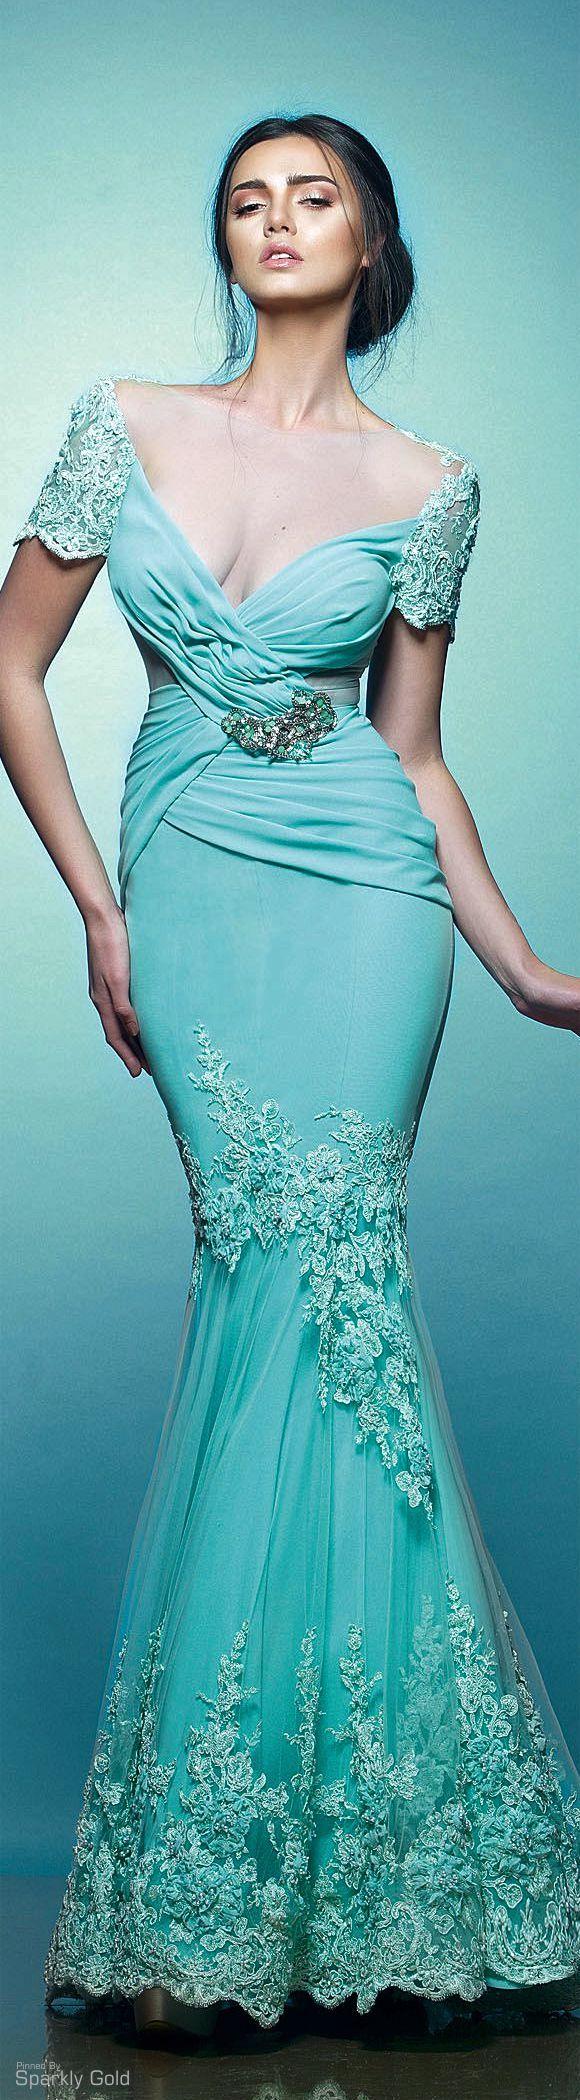 زفاف - Style: Gowns - Long/evening Dresses